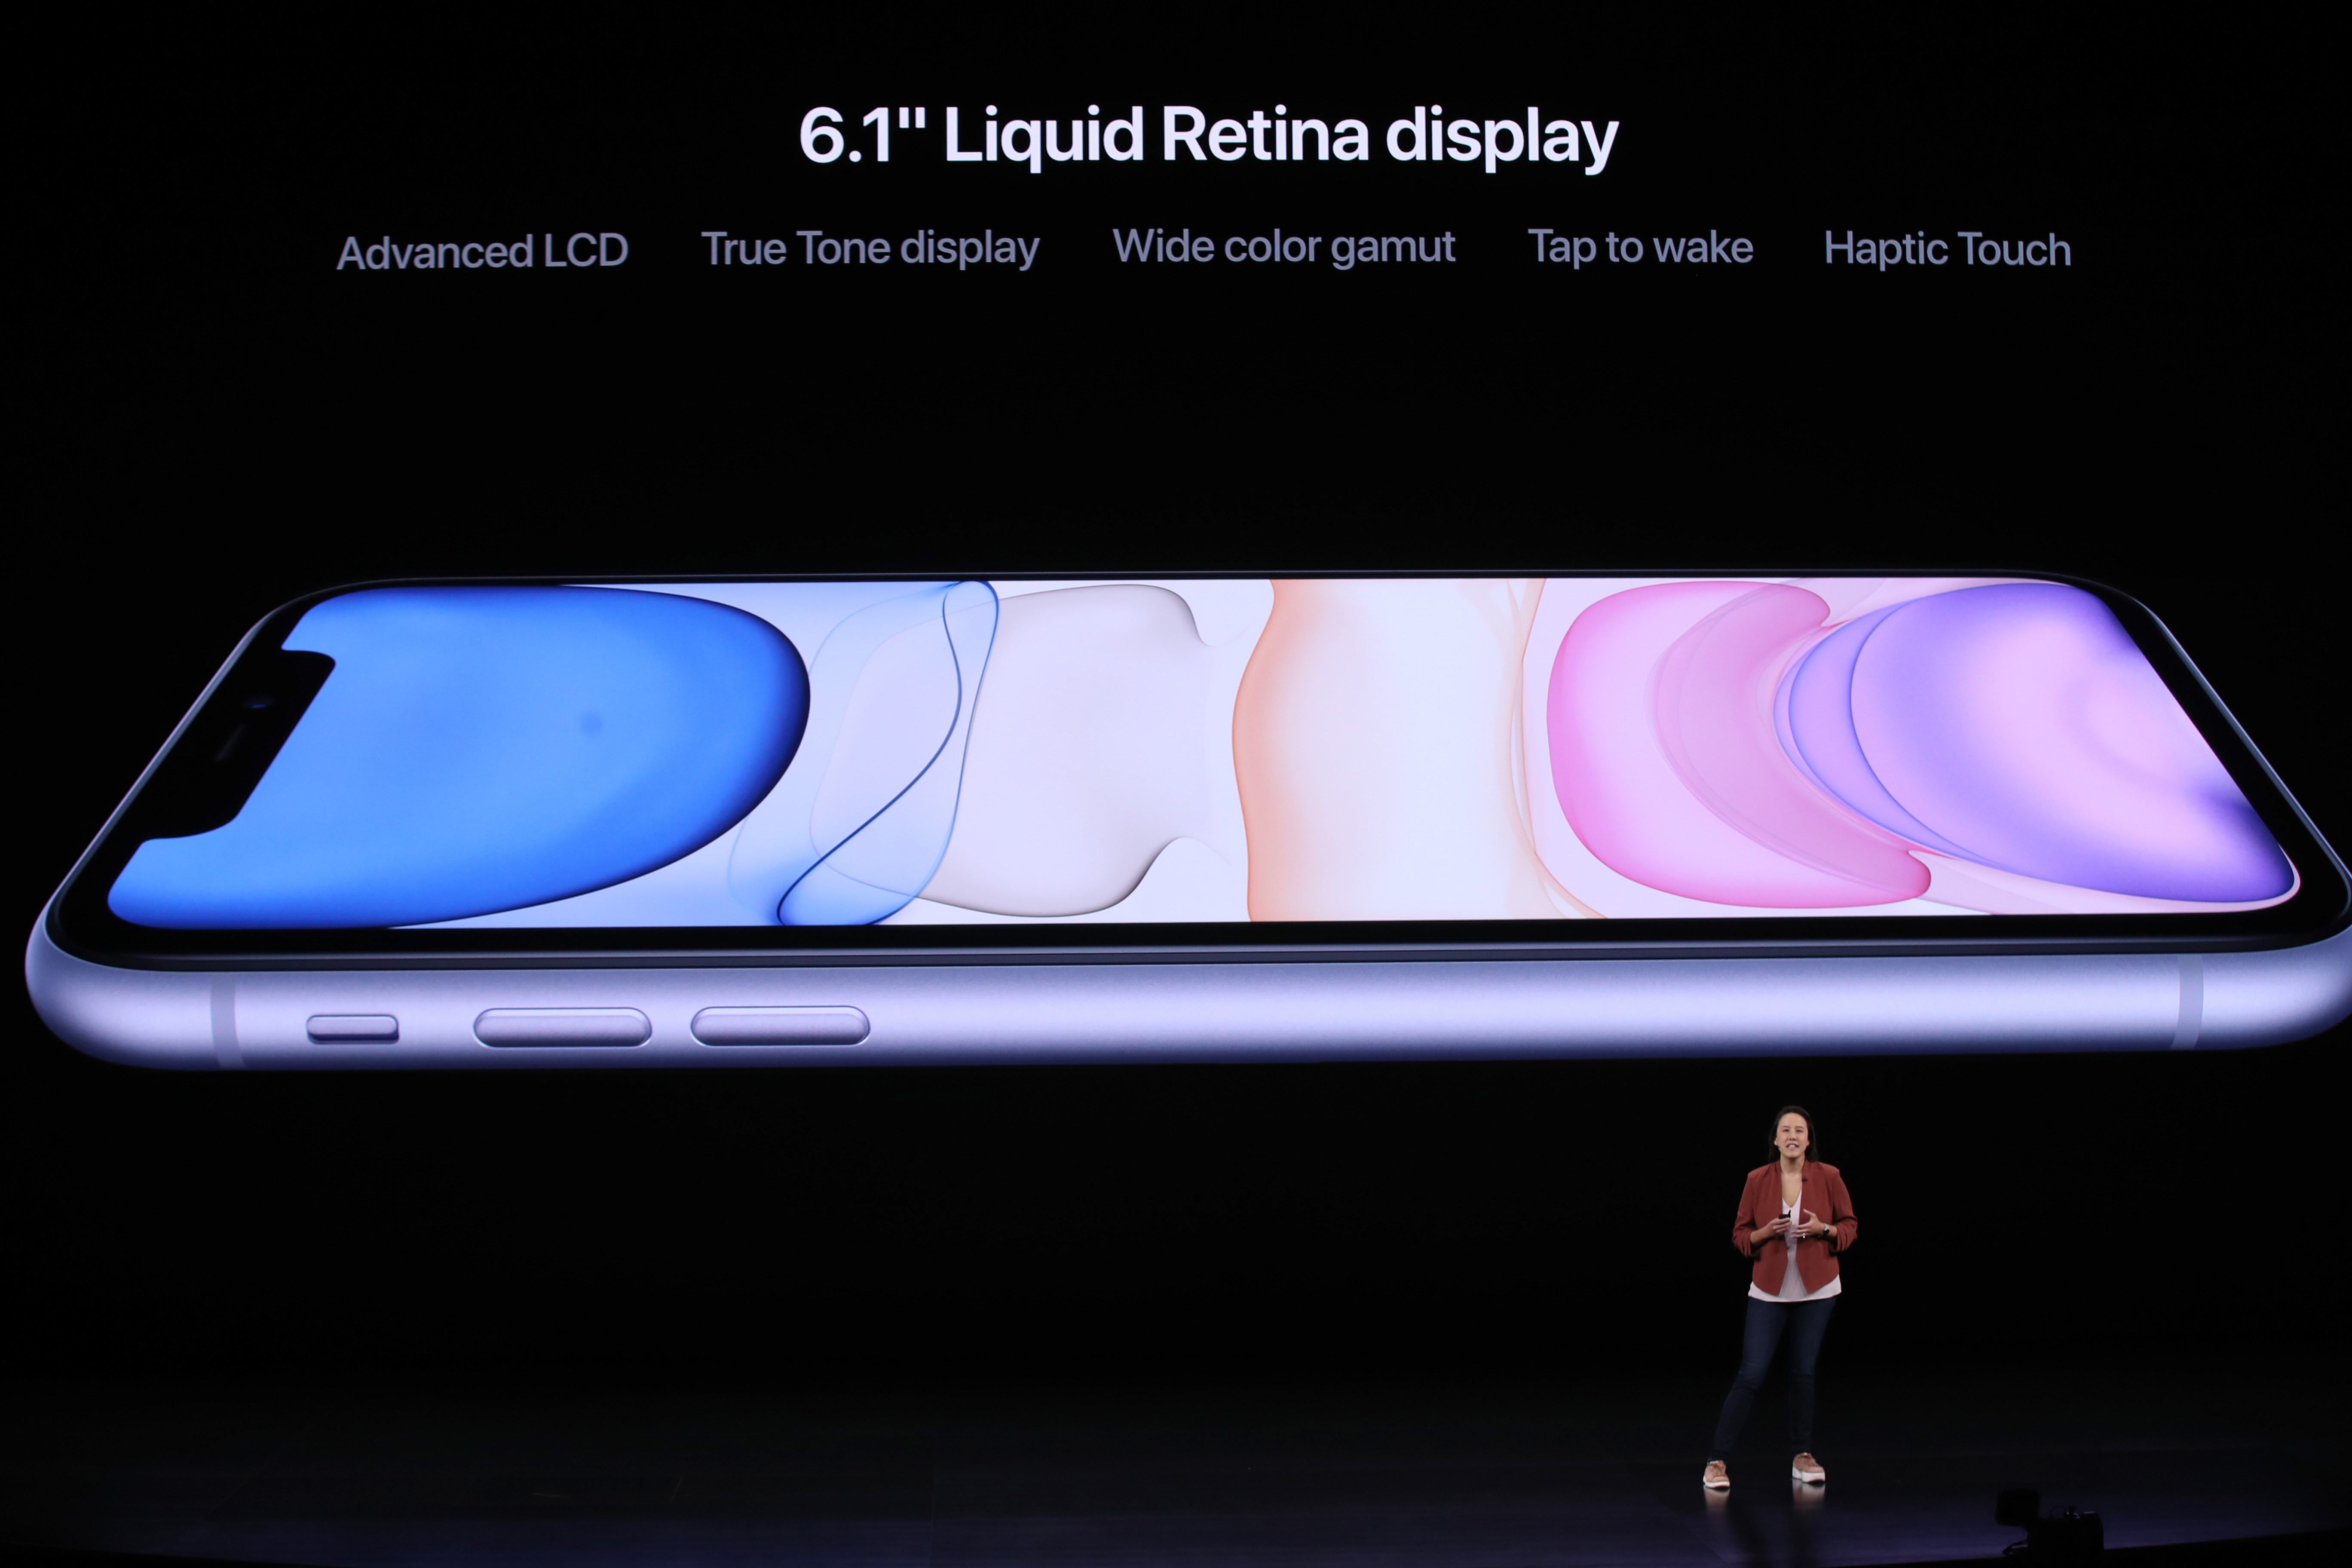 Kaiann Drance de Apple habla sobre el nuevo iPhone 11. (Foto Prensa Libre: AFP)